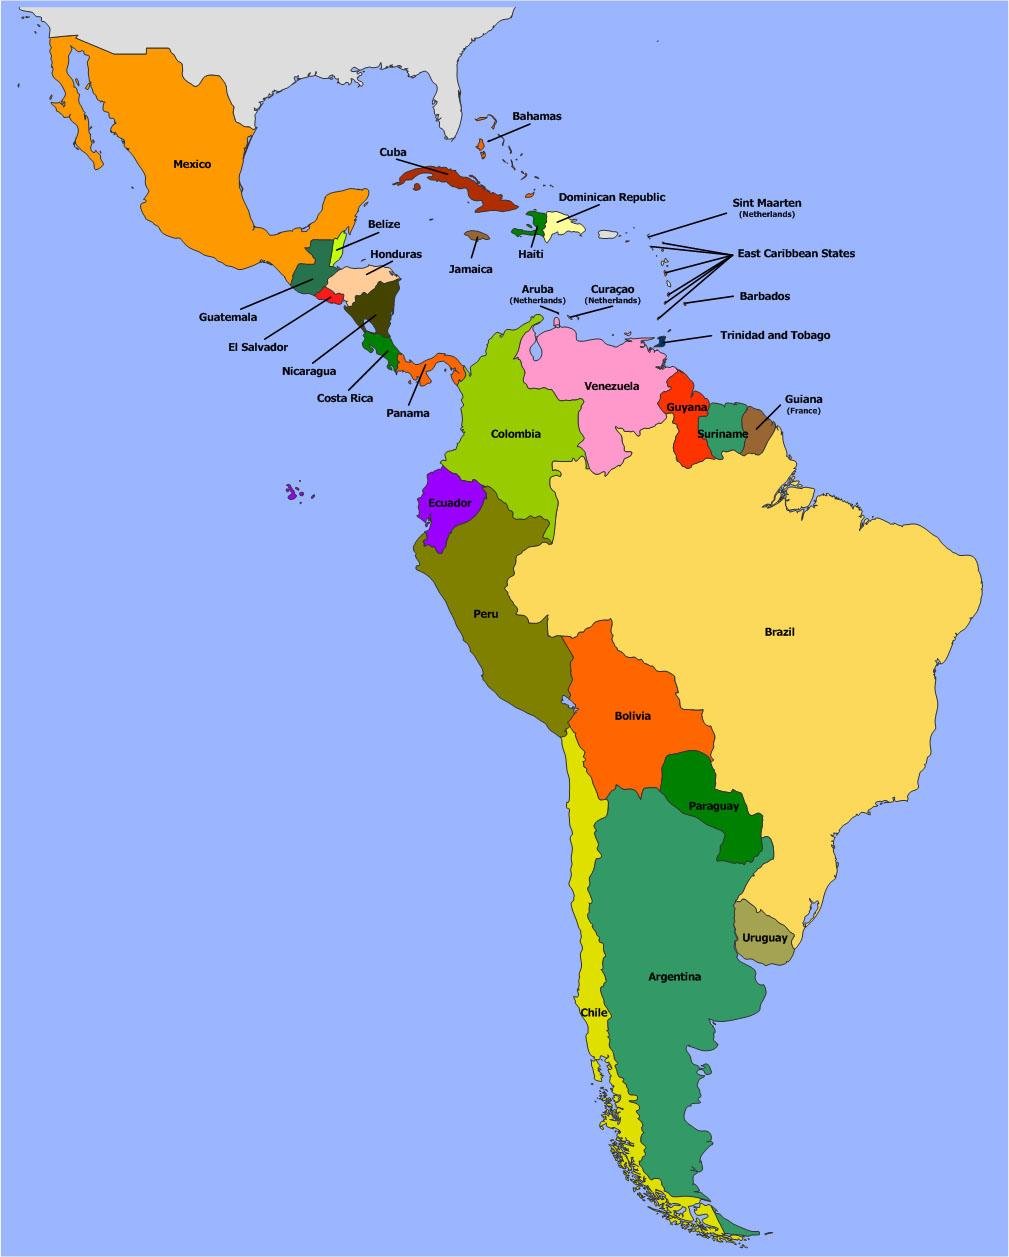 Найдите на карте государства латинской америки названные. Политическая карта Латинской Америки со странами. Латинская Америка политическая карта на русском. Карта Южной и Латинской Америки. Политическая карта литанкий Америки.